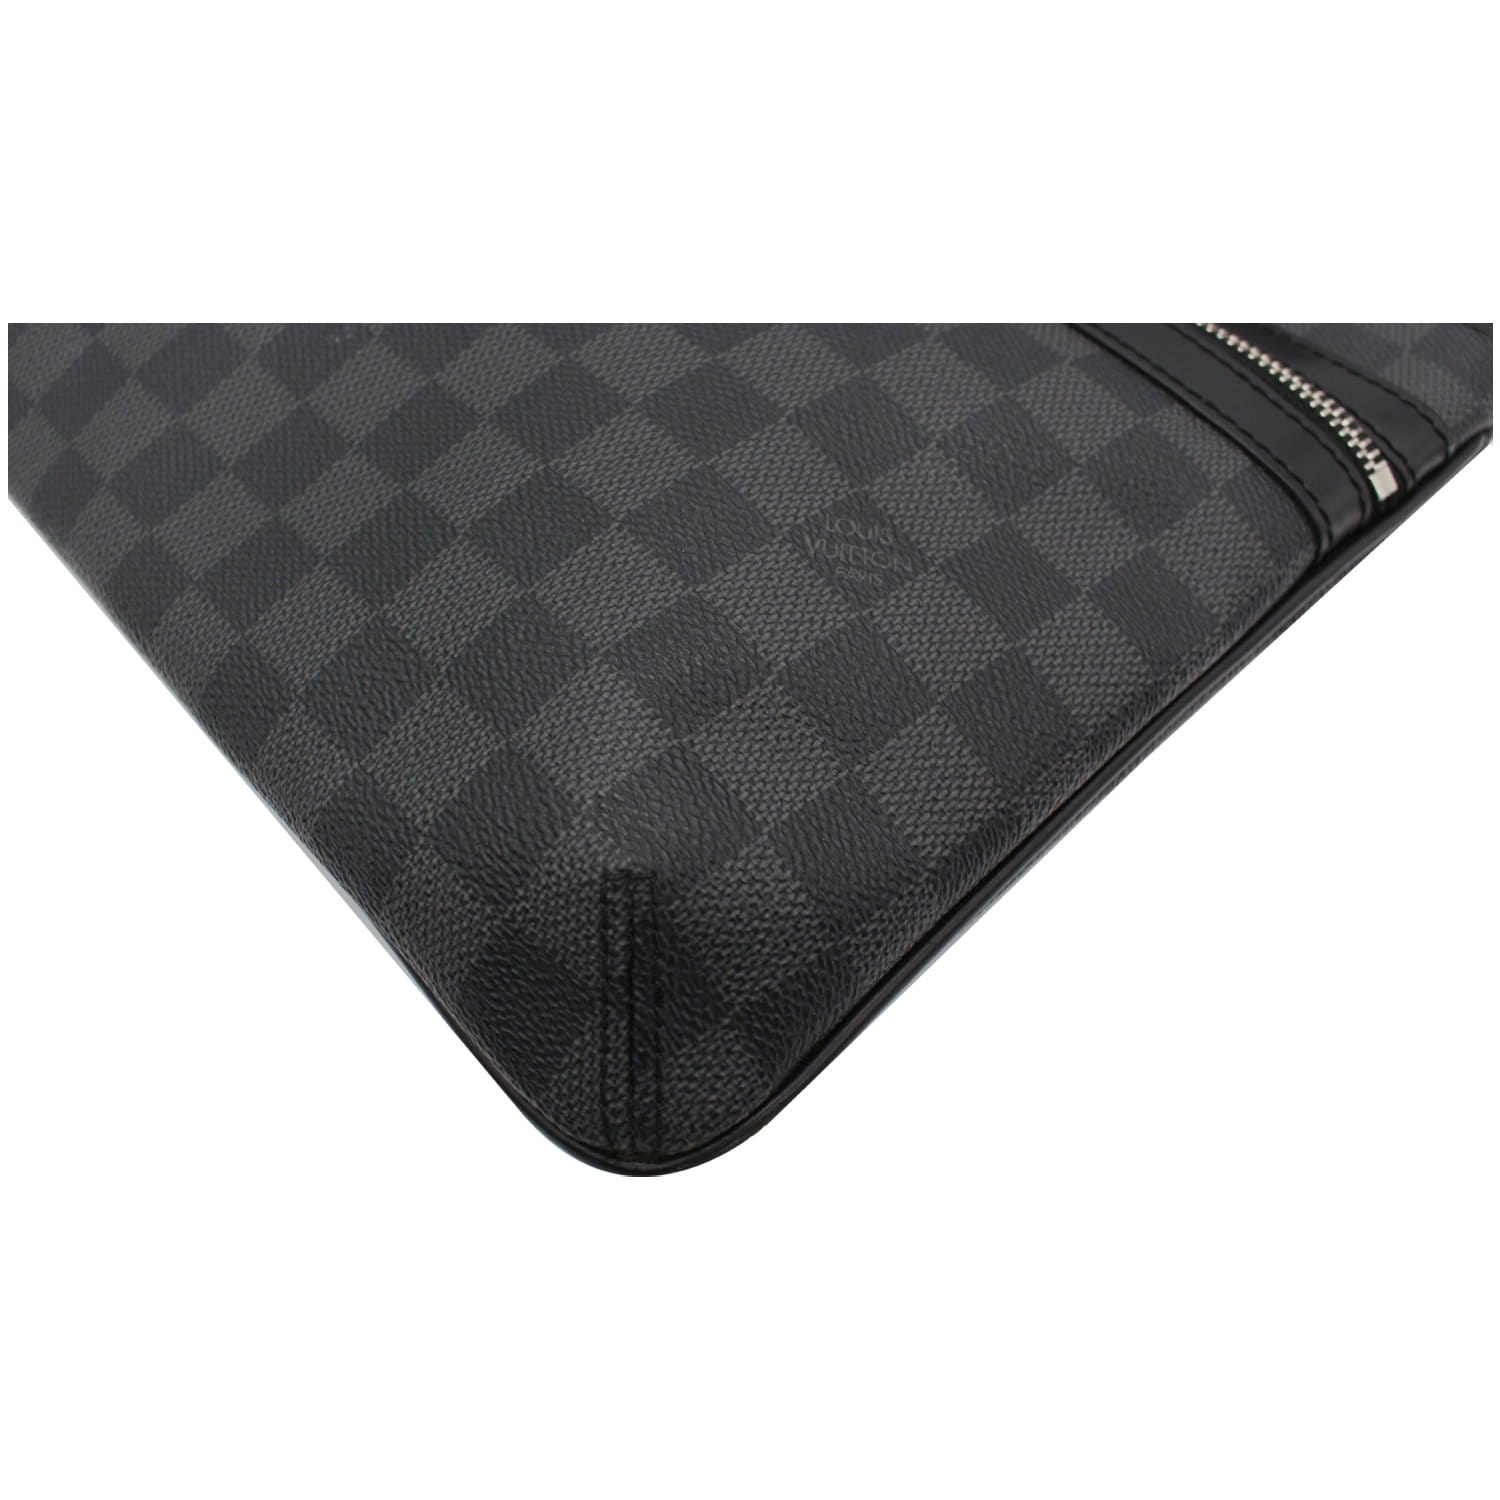 Louis Vuitton Thomas Shoulder bag 372699